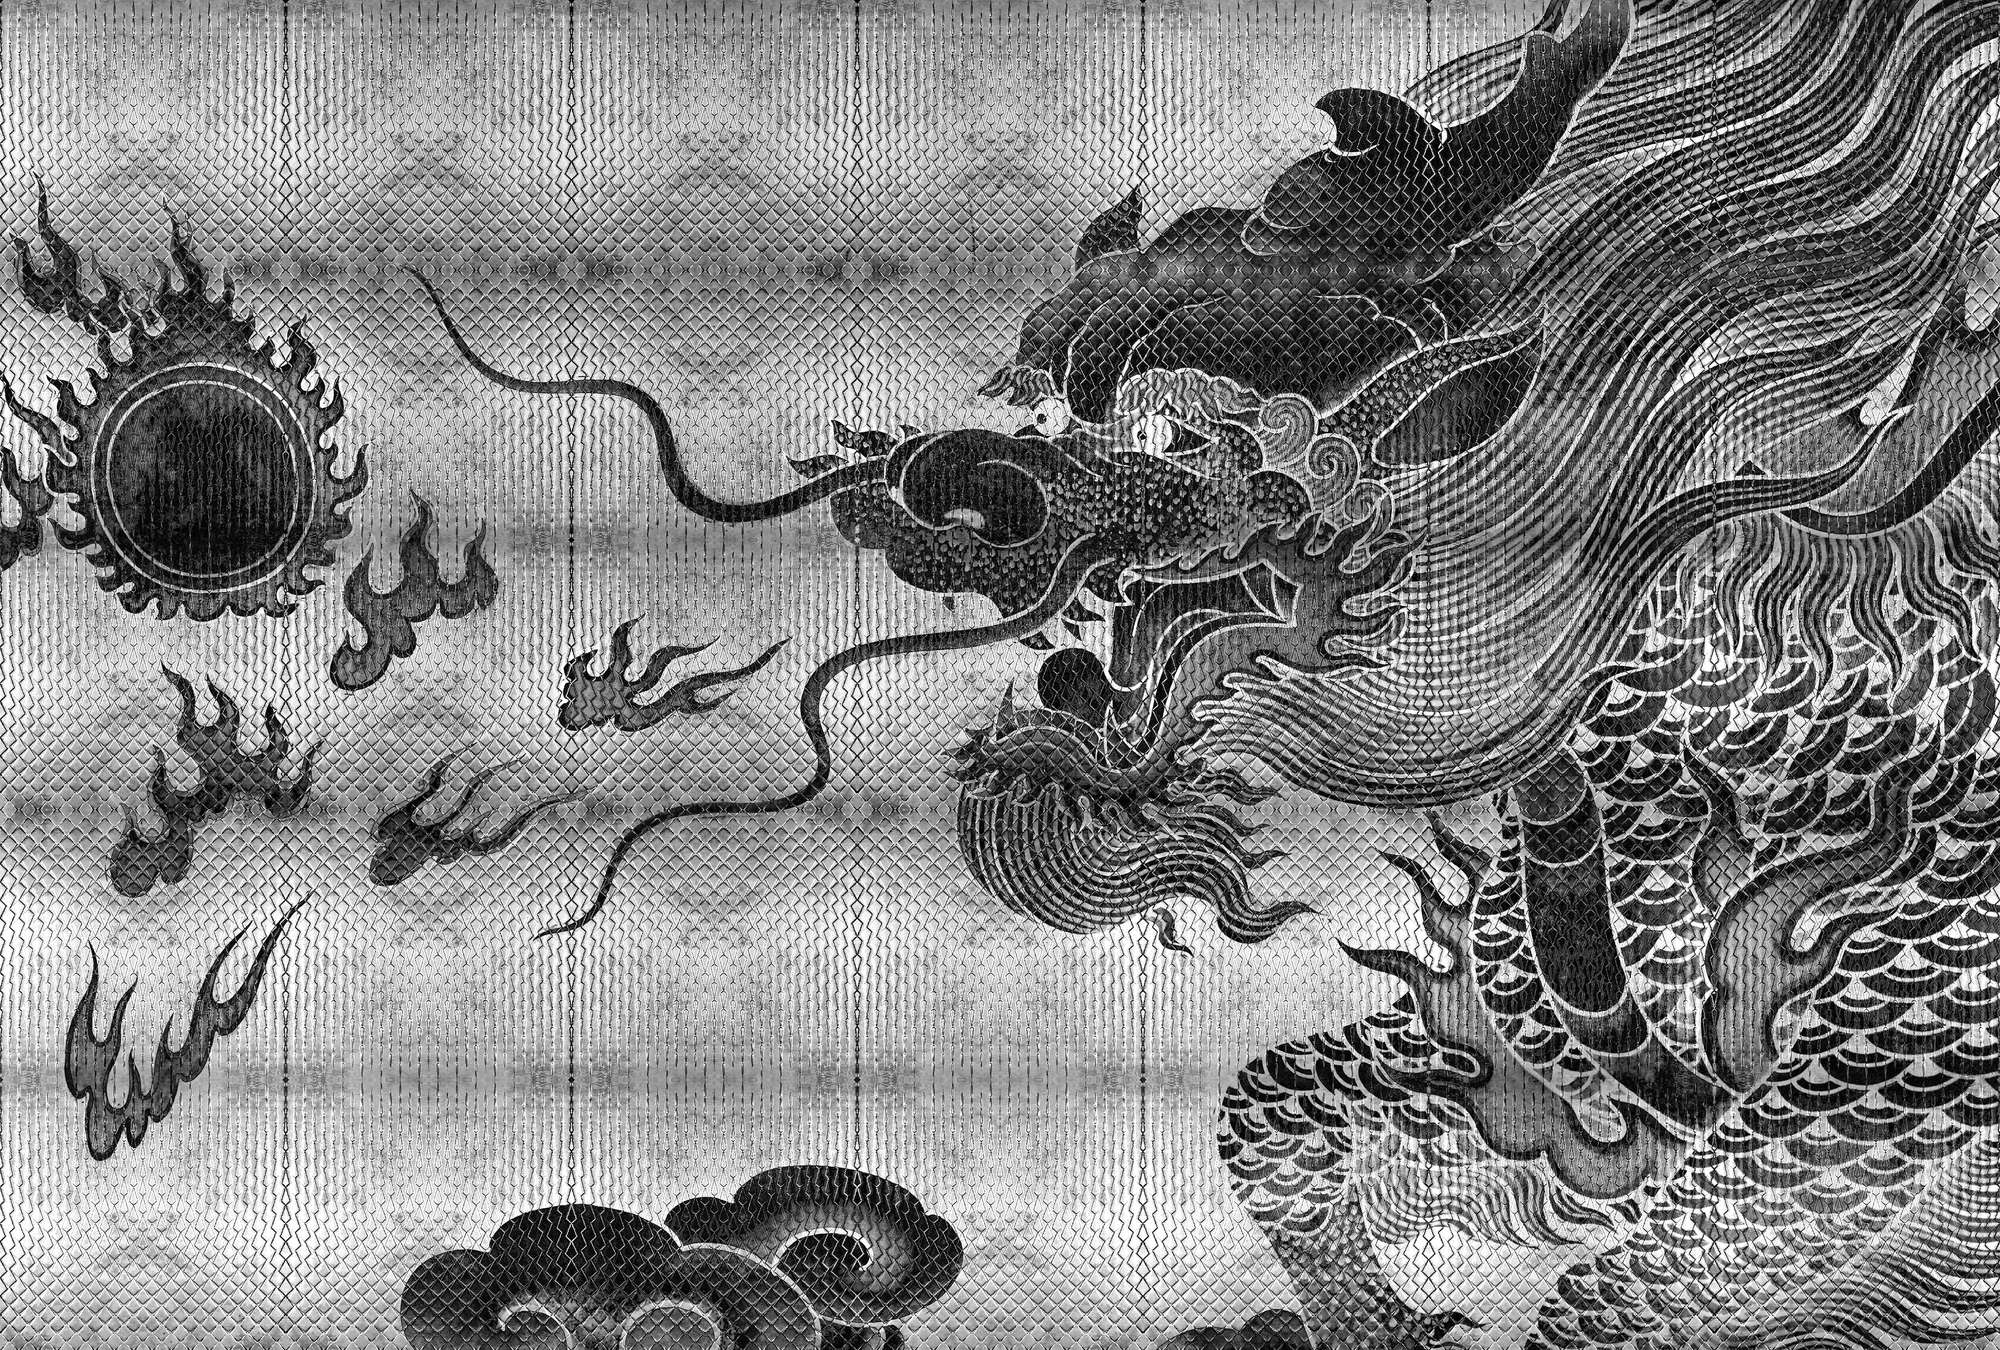             Shenzen 3 - Papier peint dragon argenté métallique de style asiatique
        